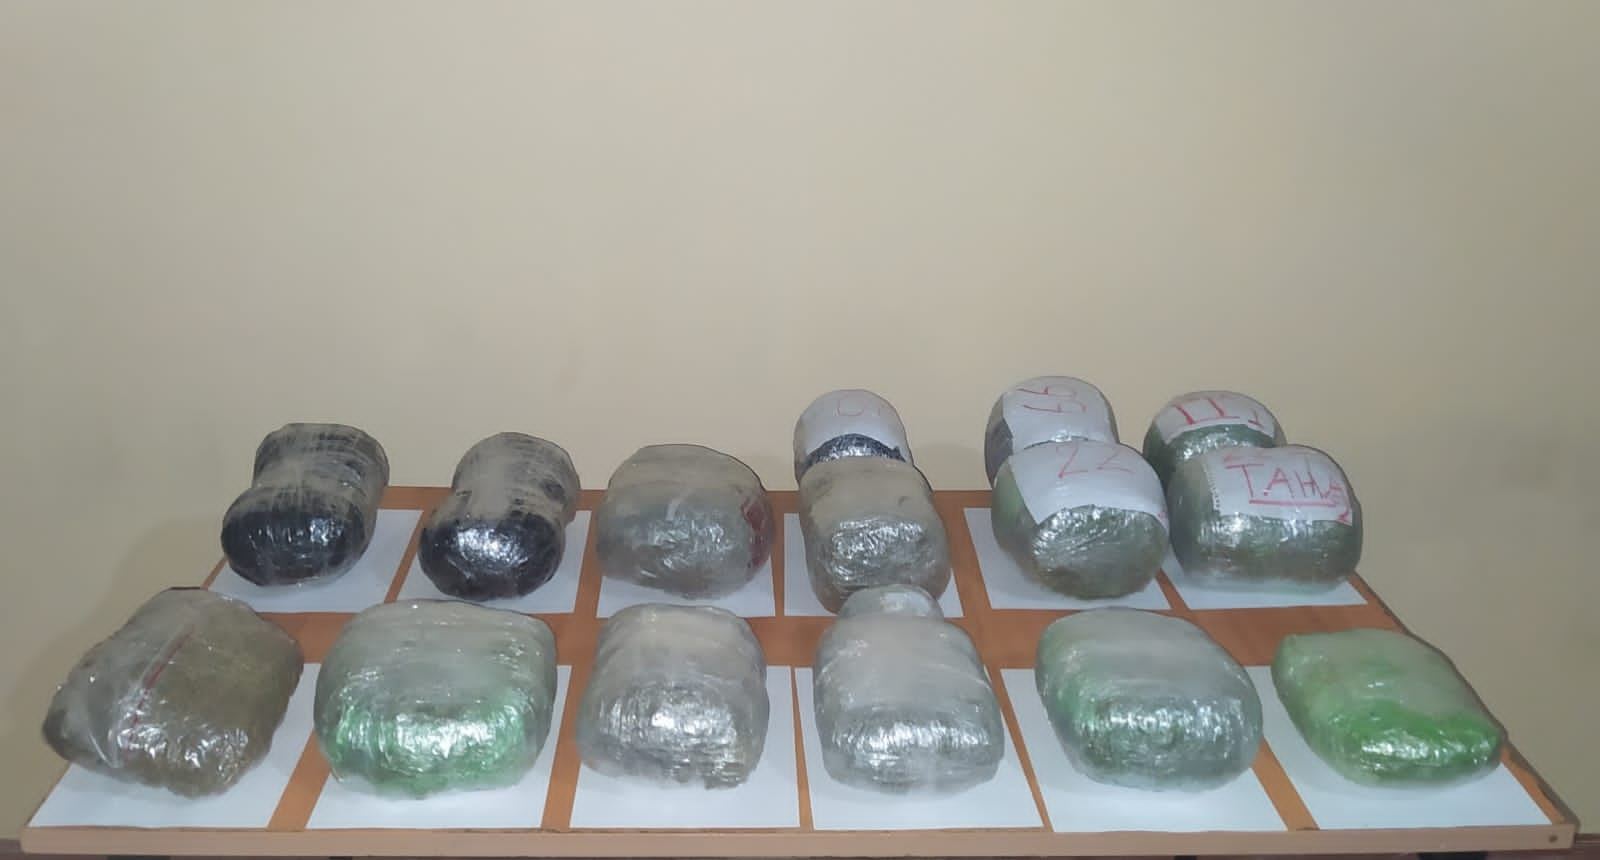 Предотвращена контрабанда наркотиков из Ирана - Госпогранслужба (ФОТО)